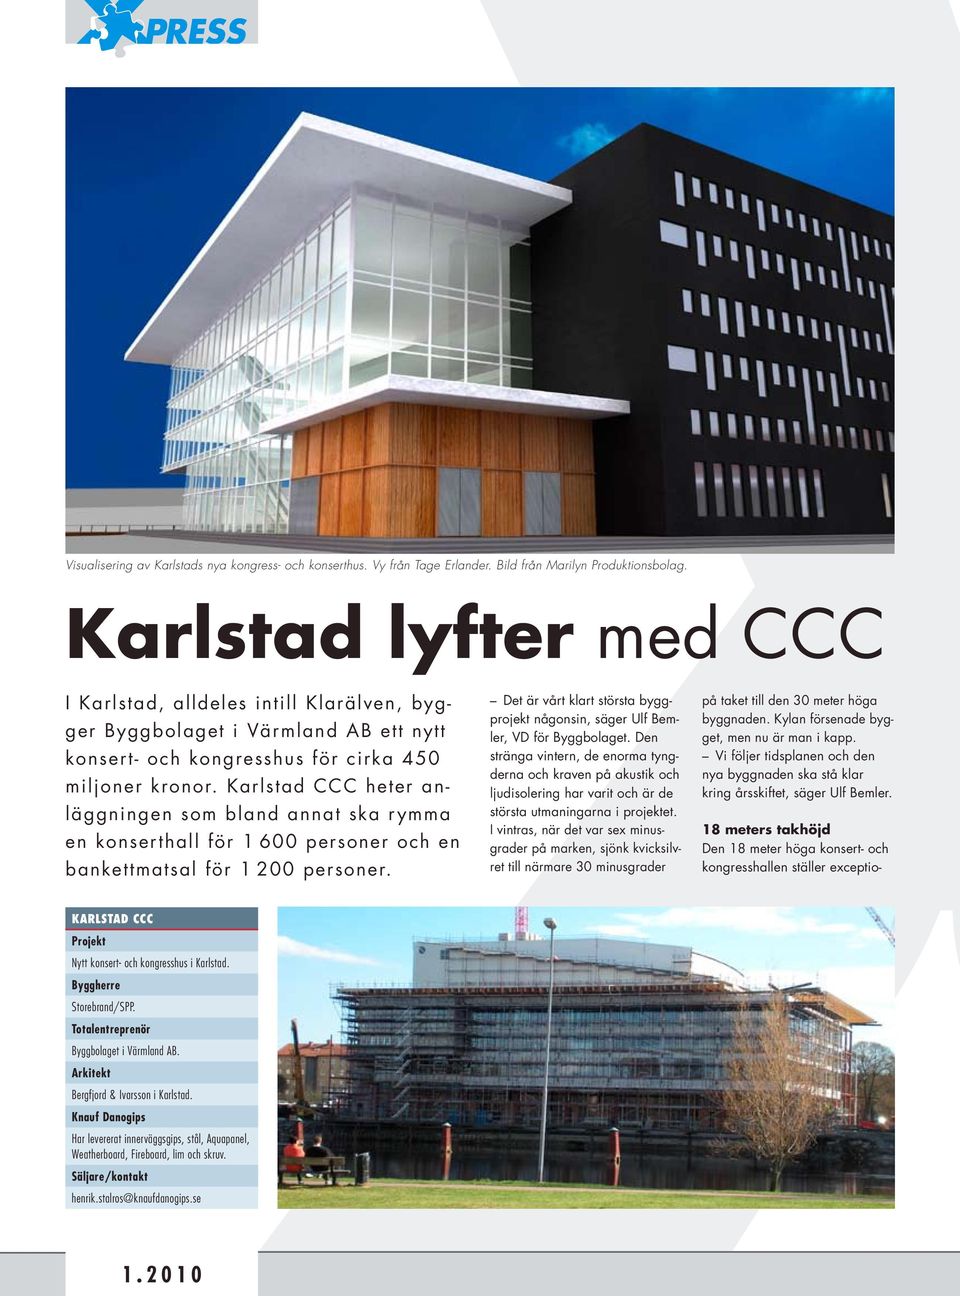 Karlstad CCC heter anläggningen som bland annat ska rymma en konserthall för 1 600 personer och en bankettmatsal för 1 200 personer.